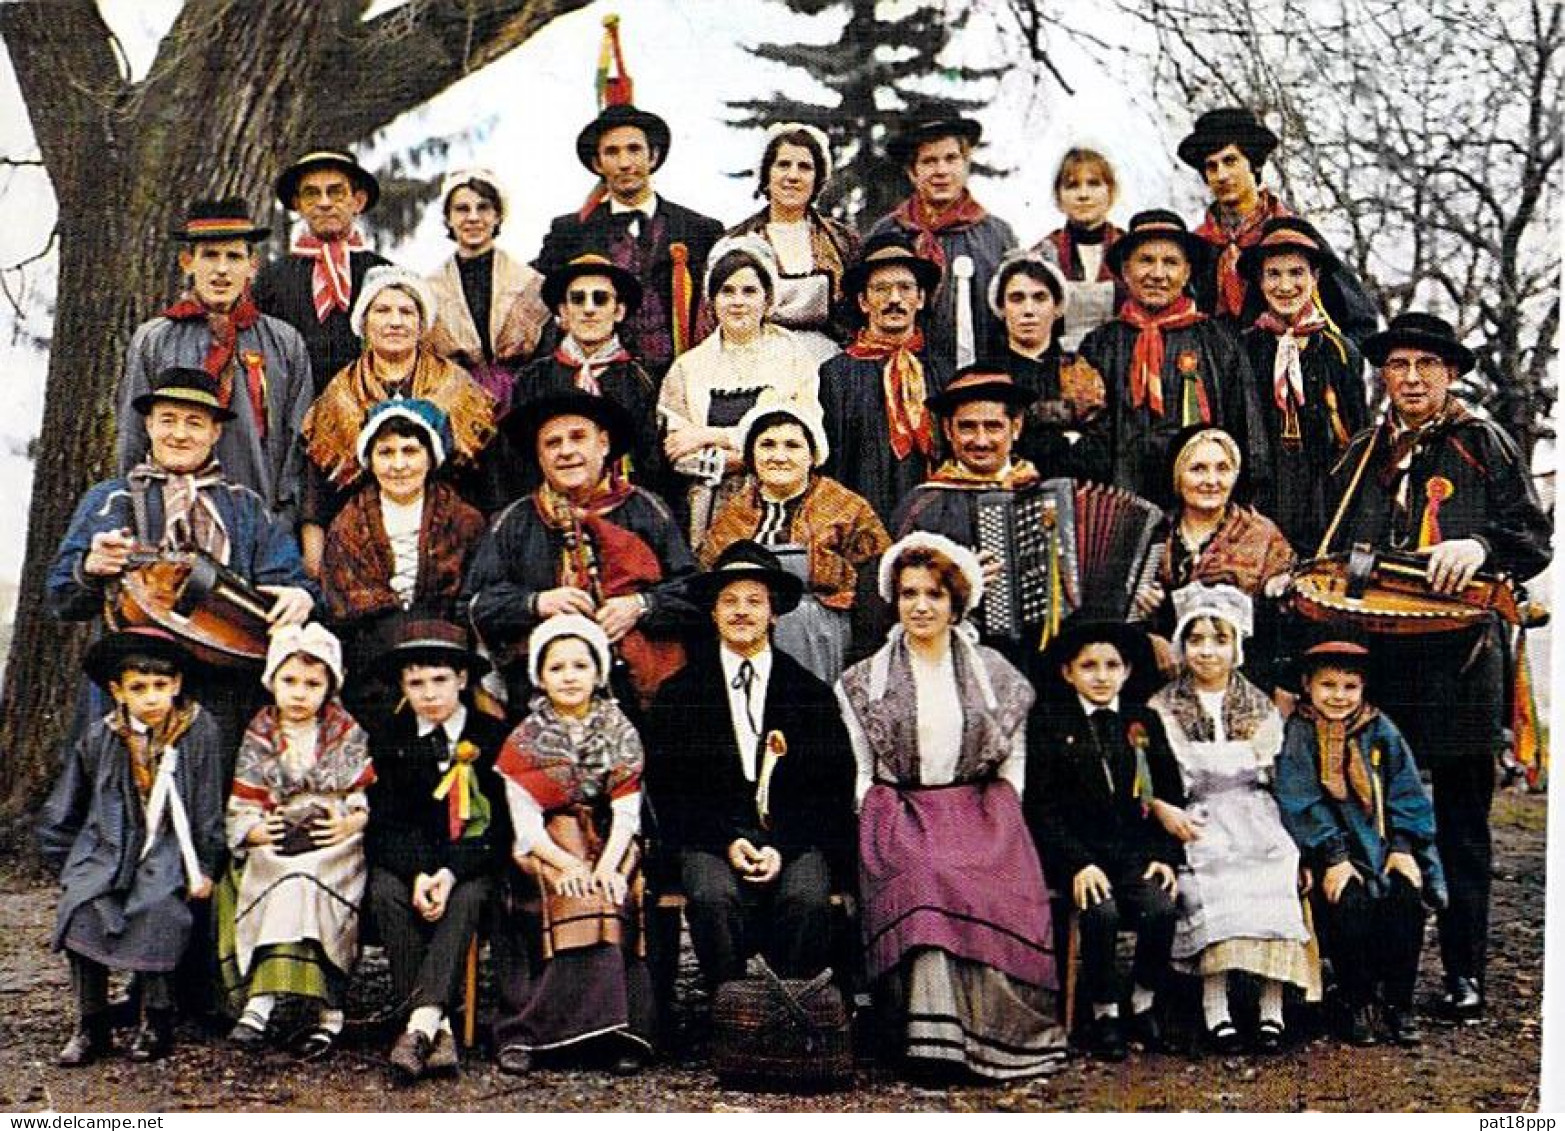 FOLKLORE Traditions - Lot de 10 CPSM-CPM Grand Format FRANCE (Groupes Folkloriques, Personnages, Costumes en bon plan)